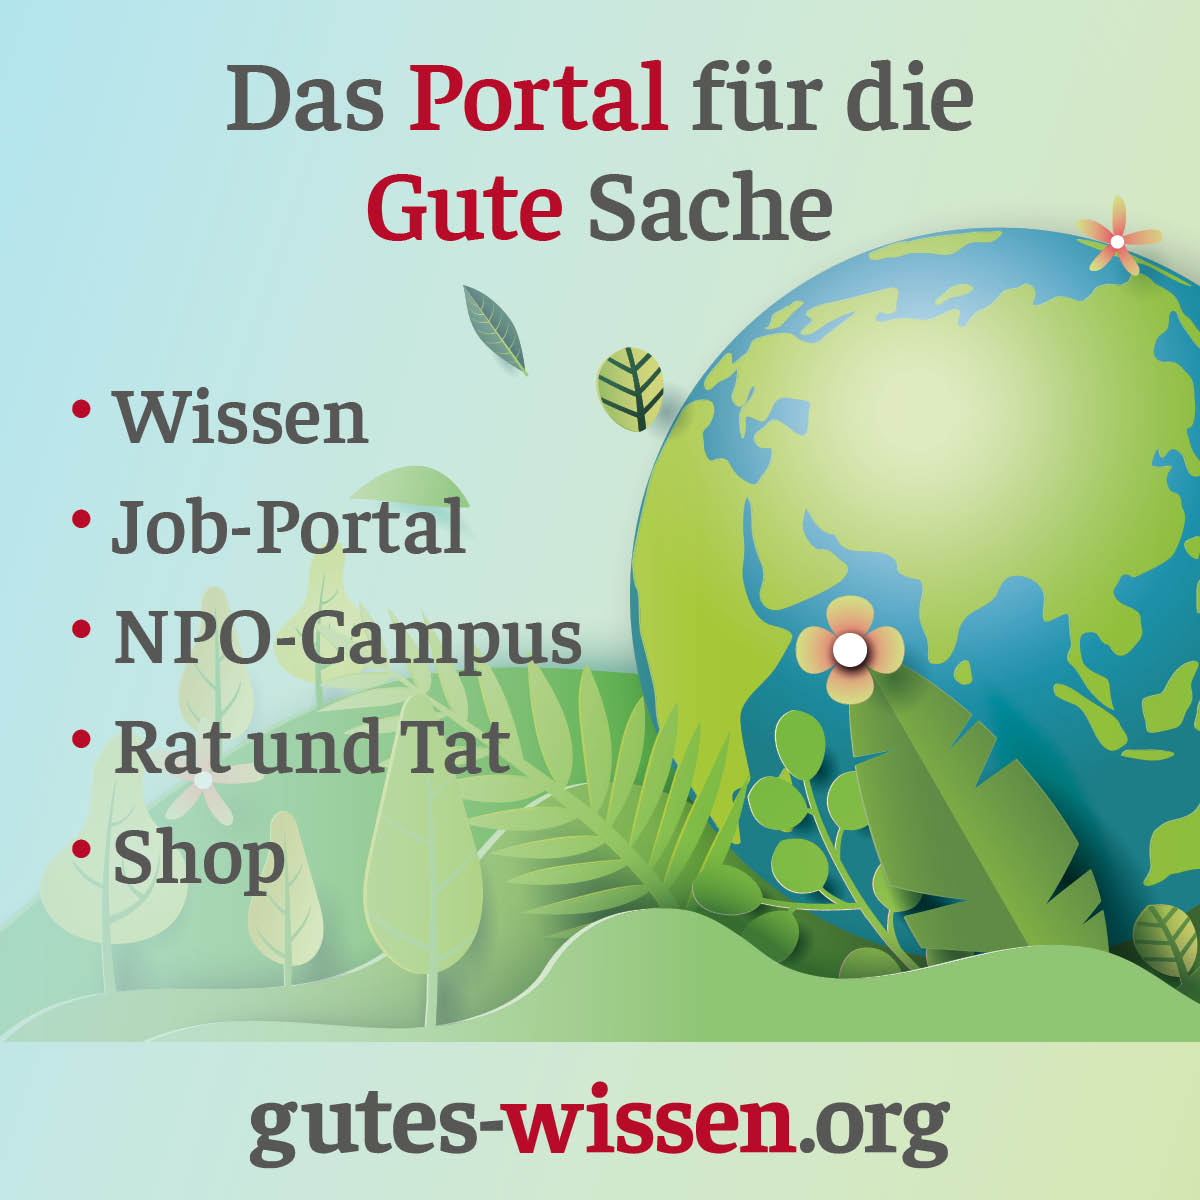 (c) Gutes-wissen.org